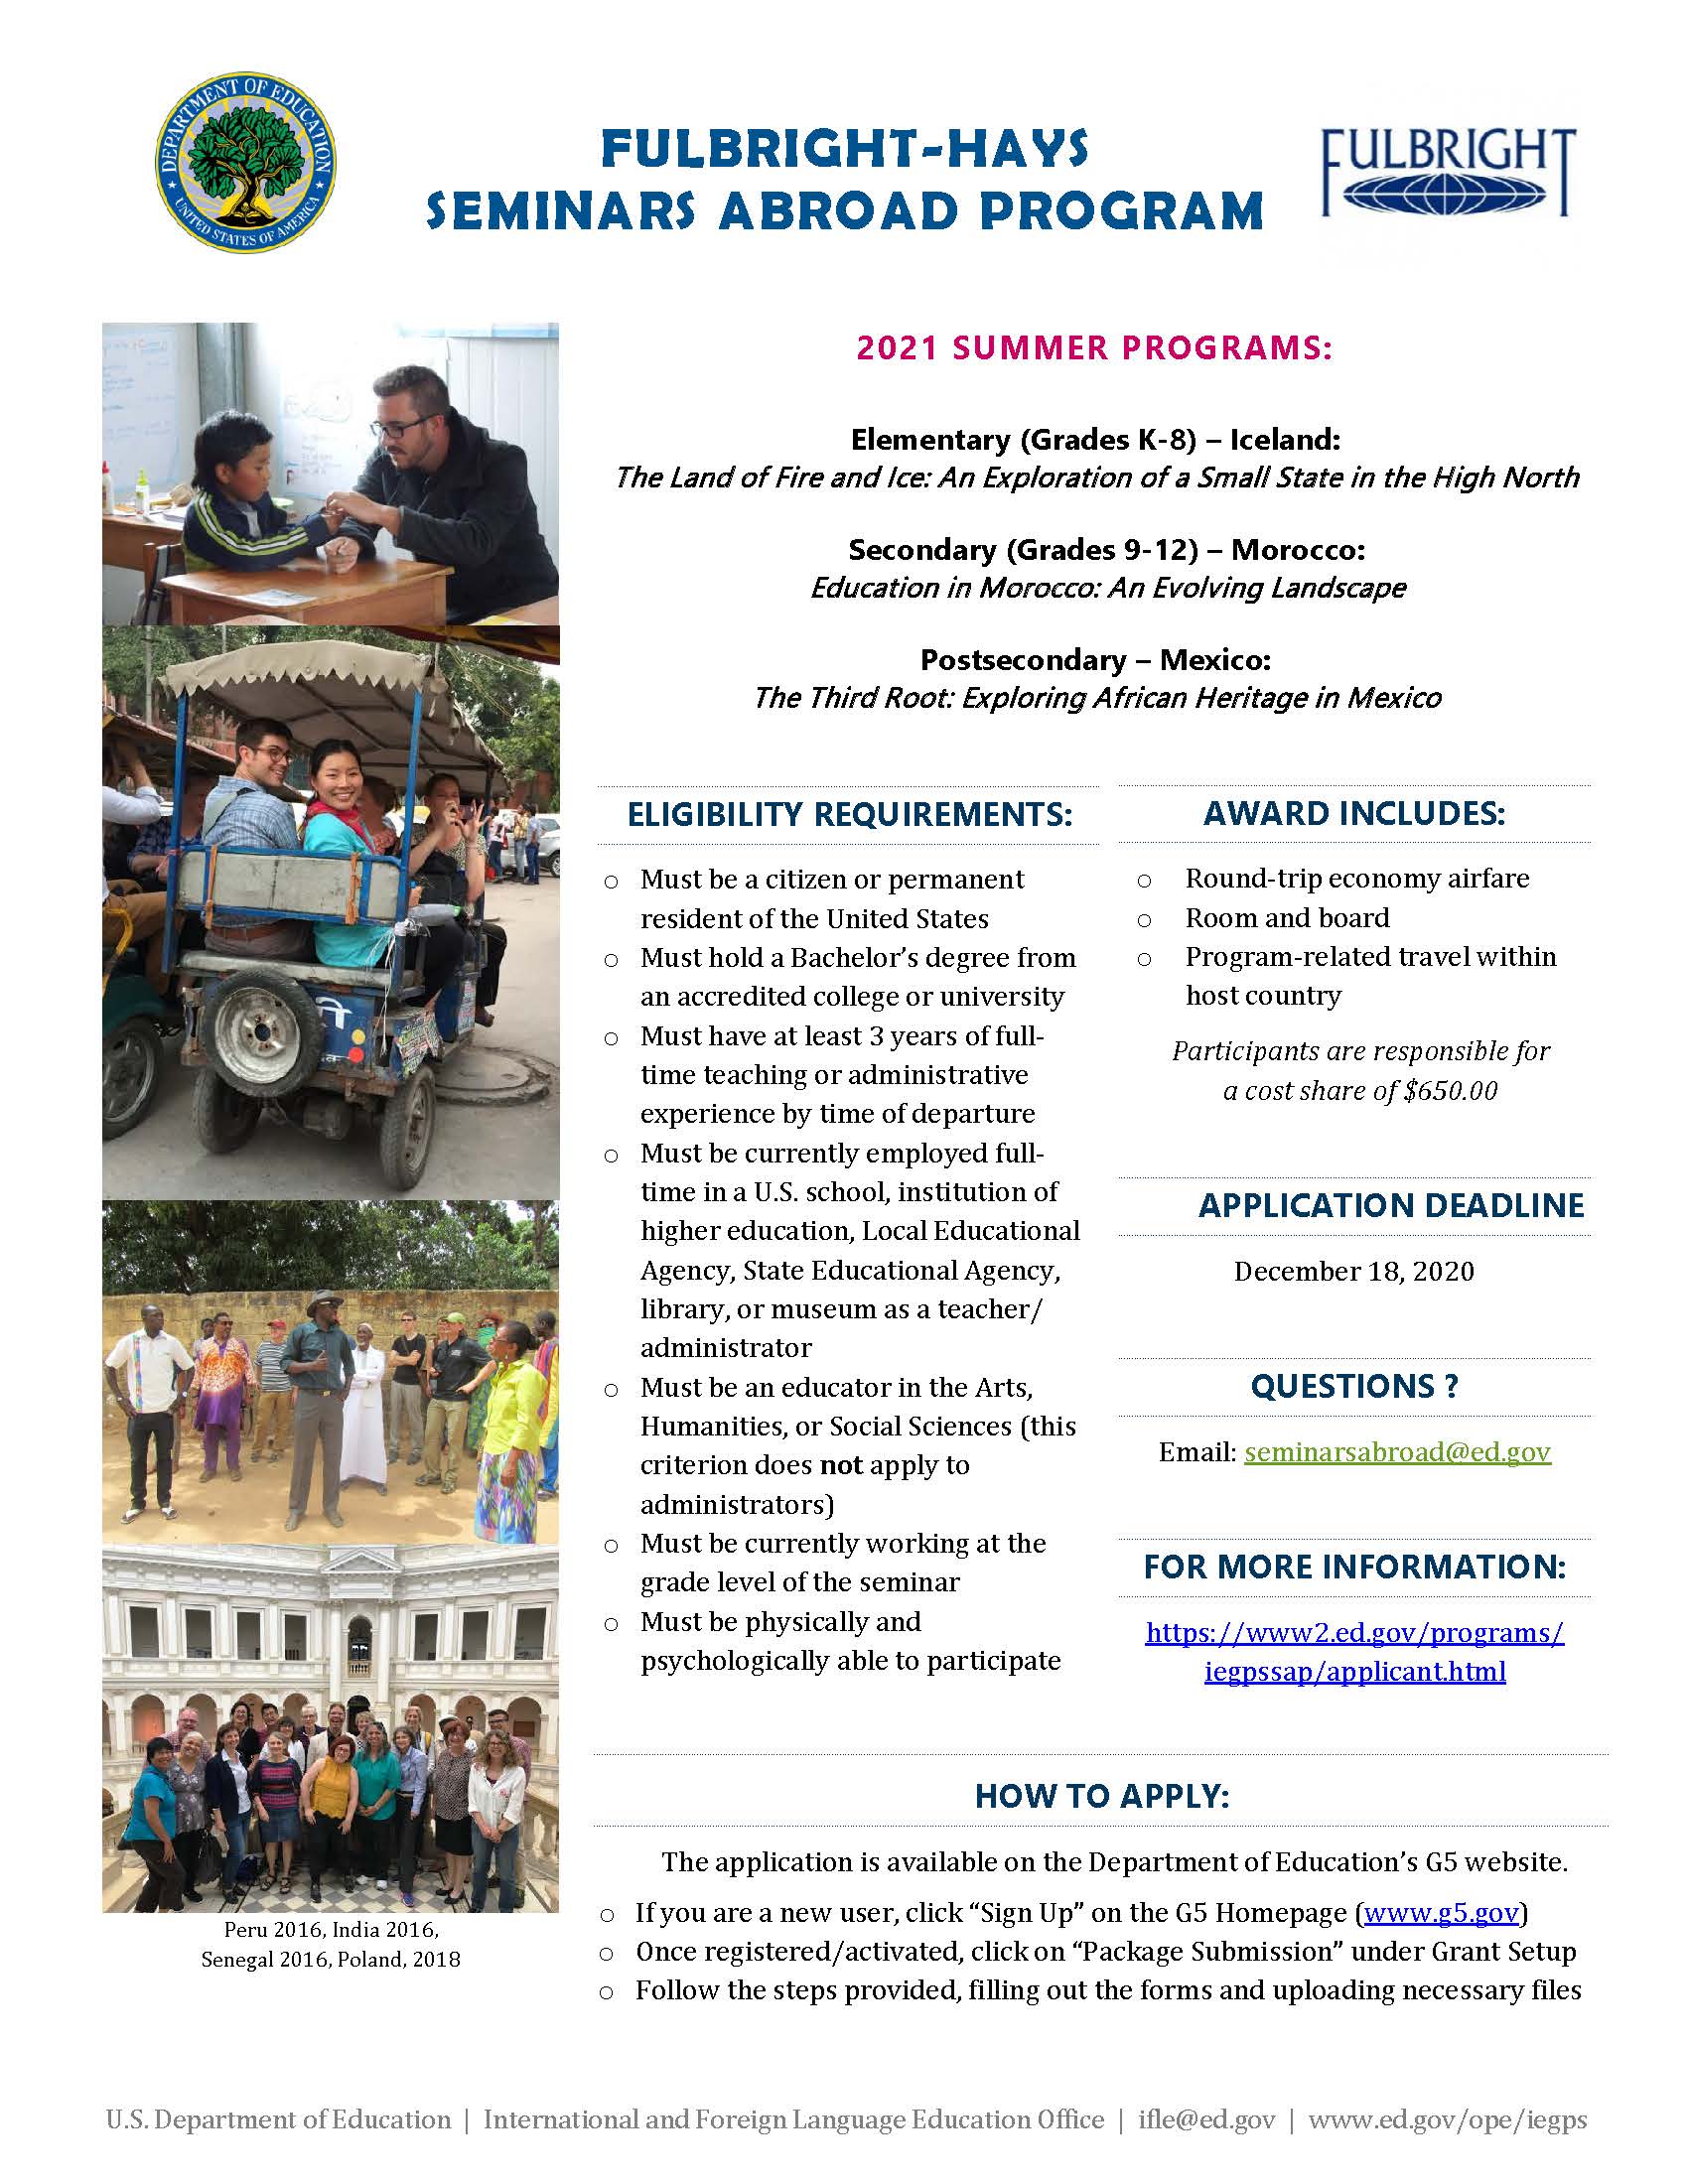 2021 Fulbright-Hays Seminars Abroad Program